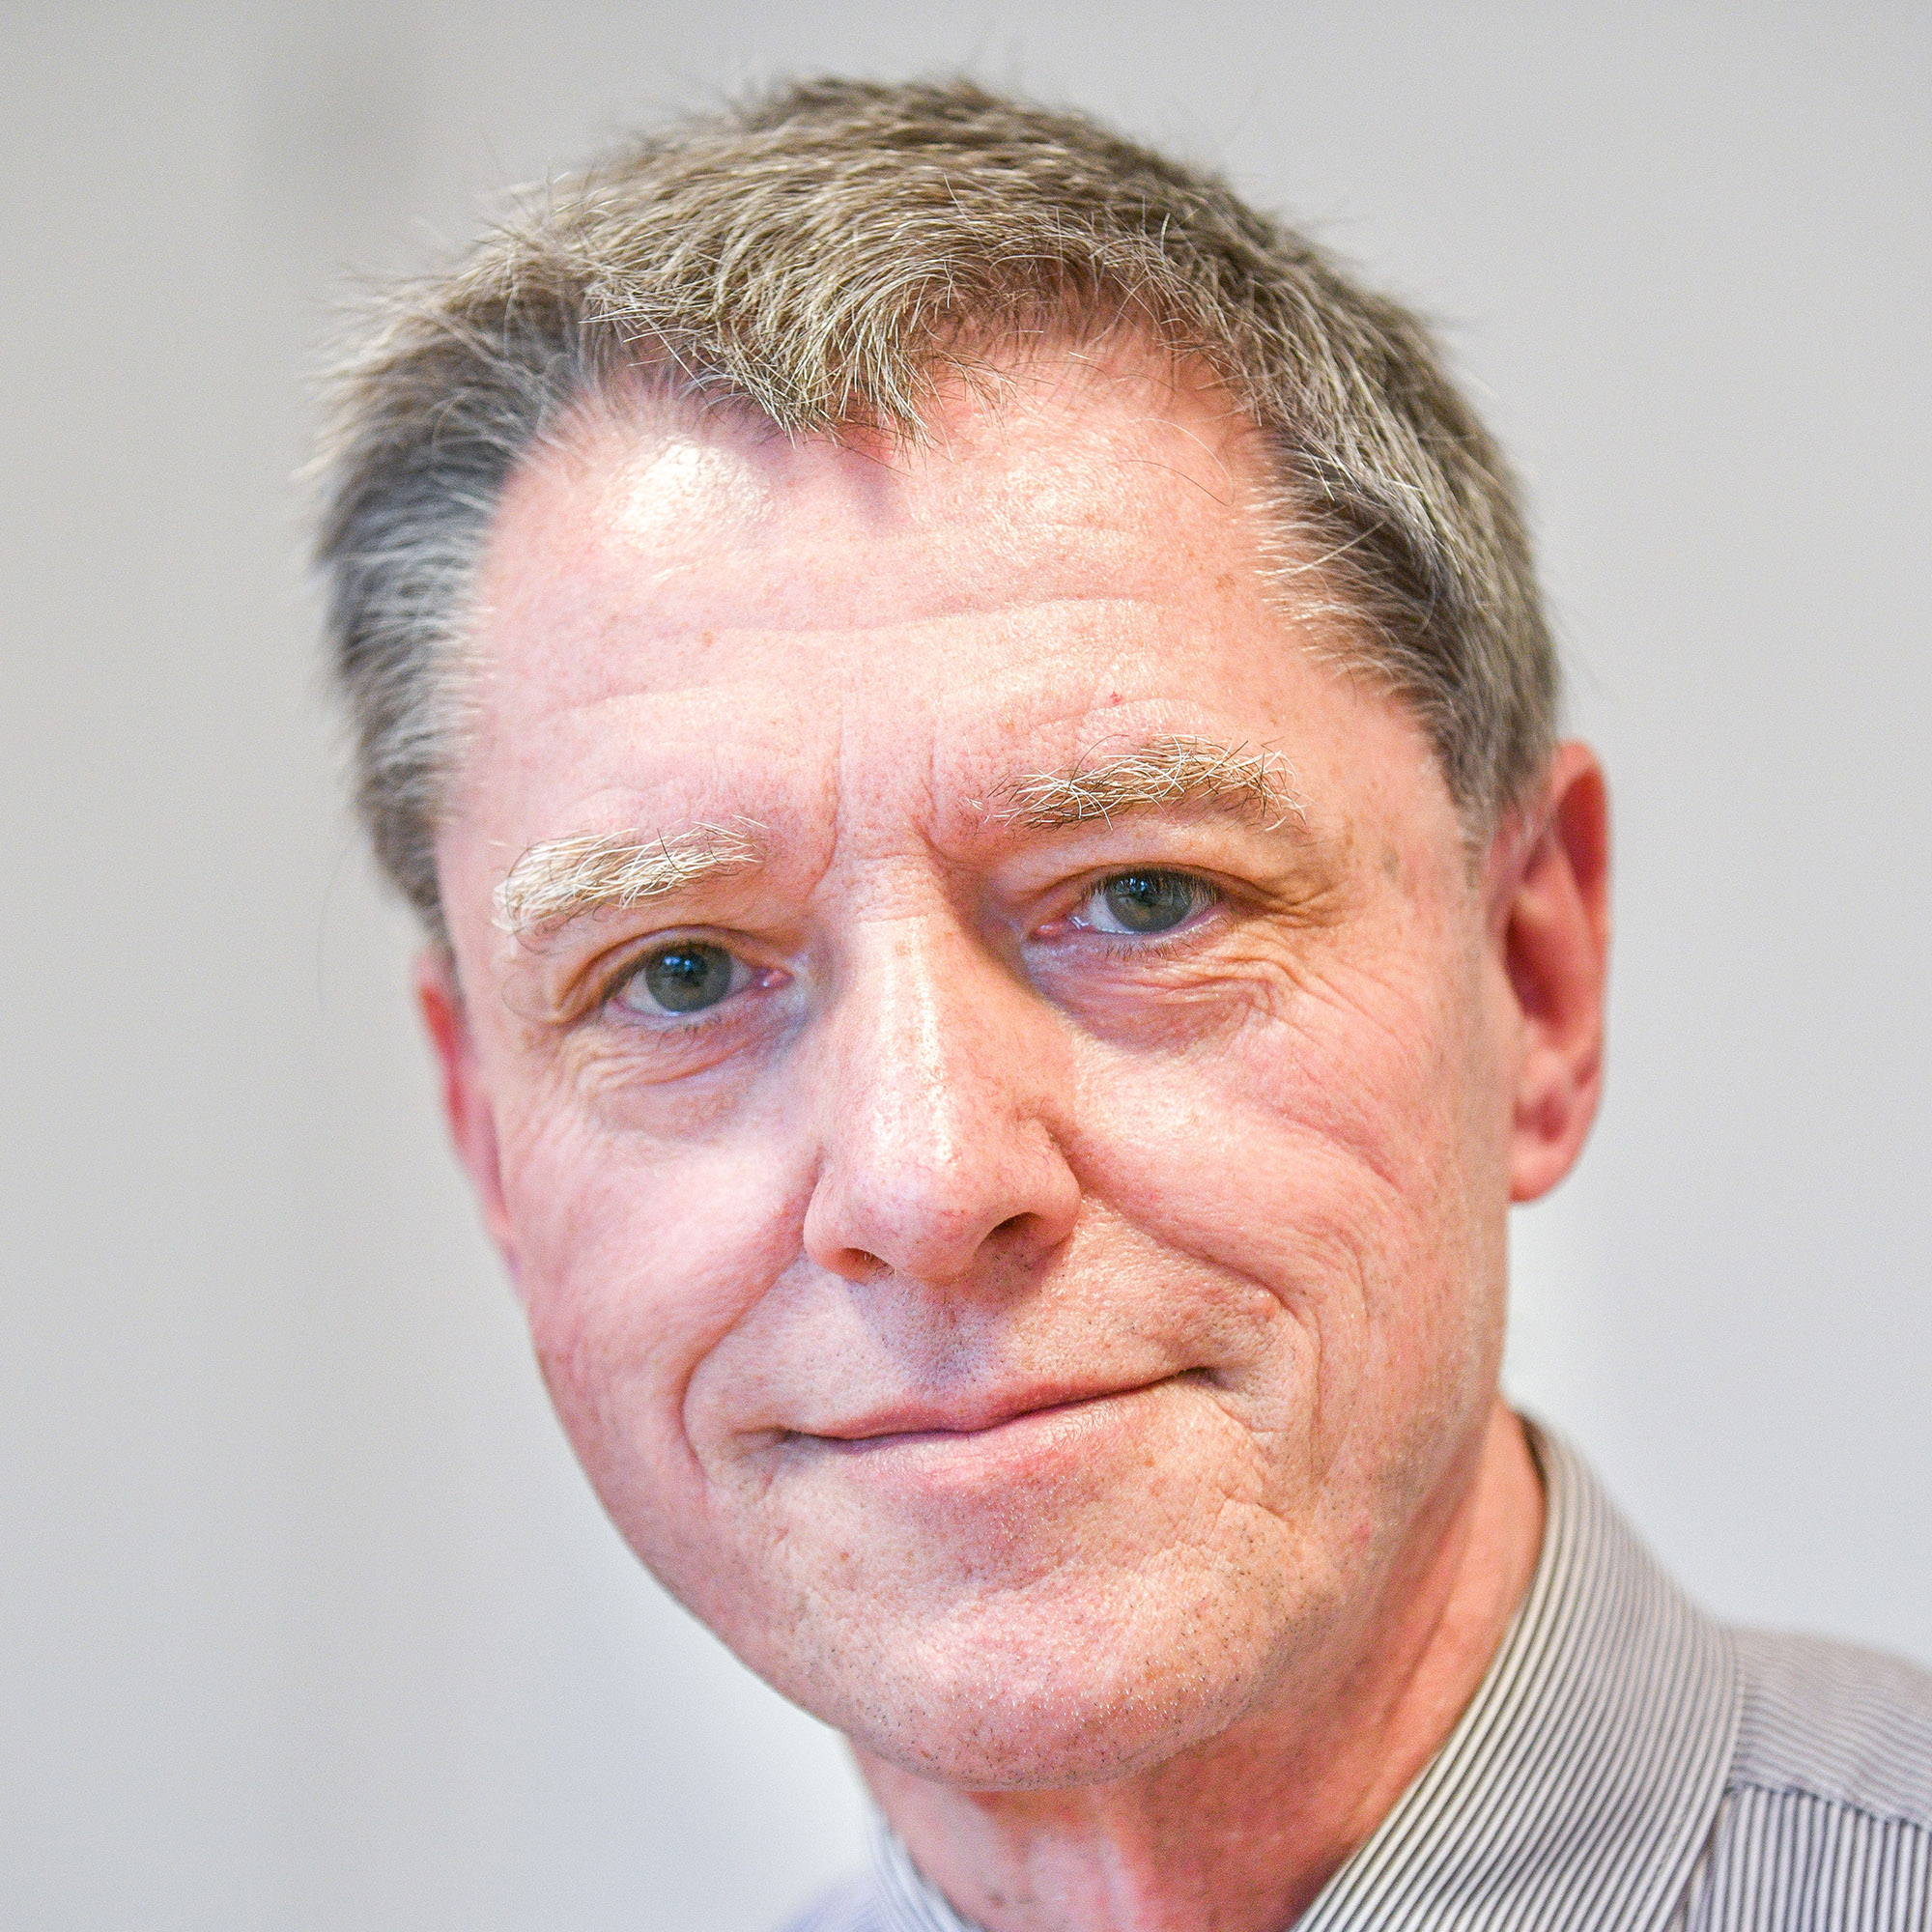 Herr Jürgen Skotschke, Geschäftsführer des Nienhof, lächelt.